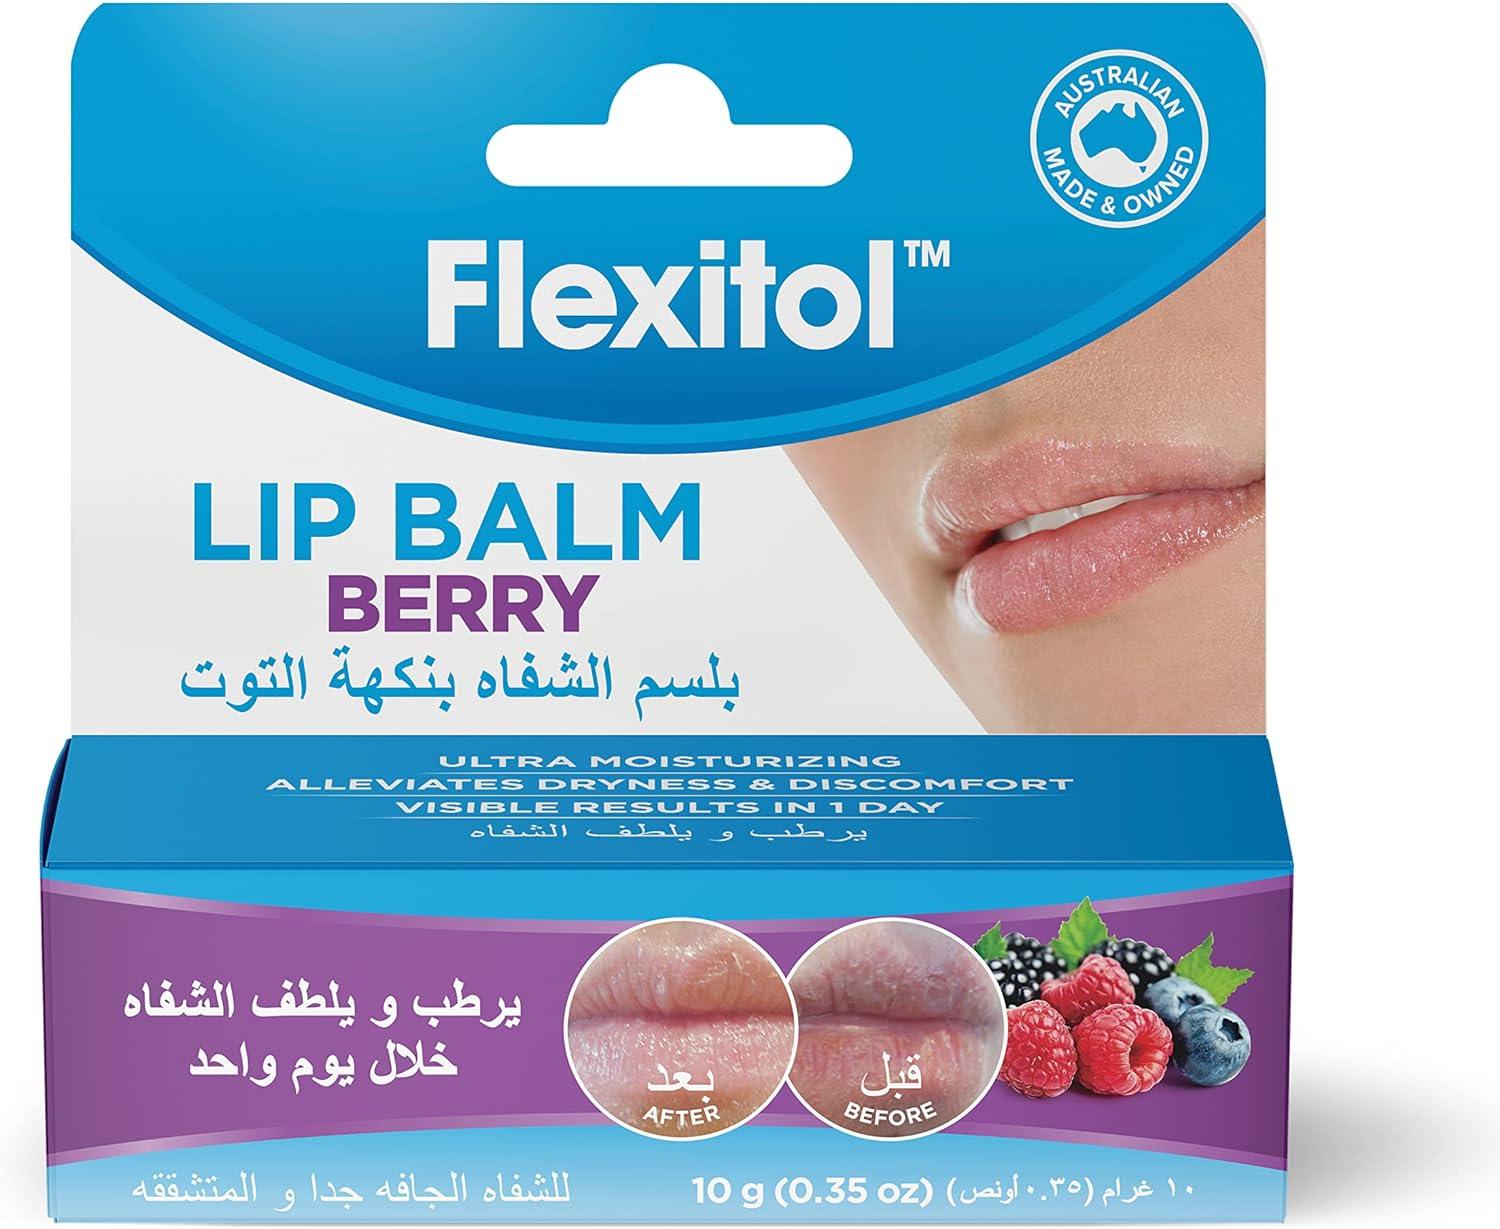 Flexitol Lip balm 10g- Berry - Wellness Shoppee